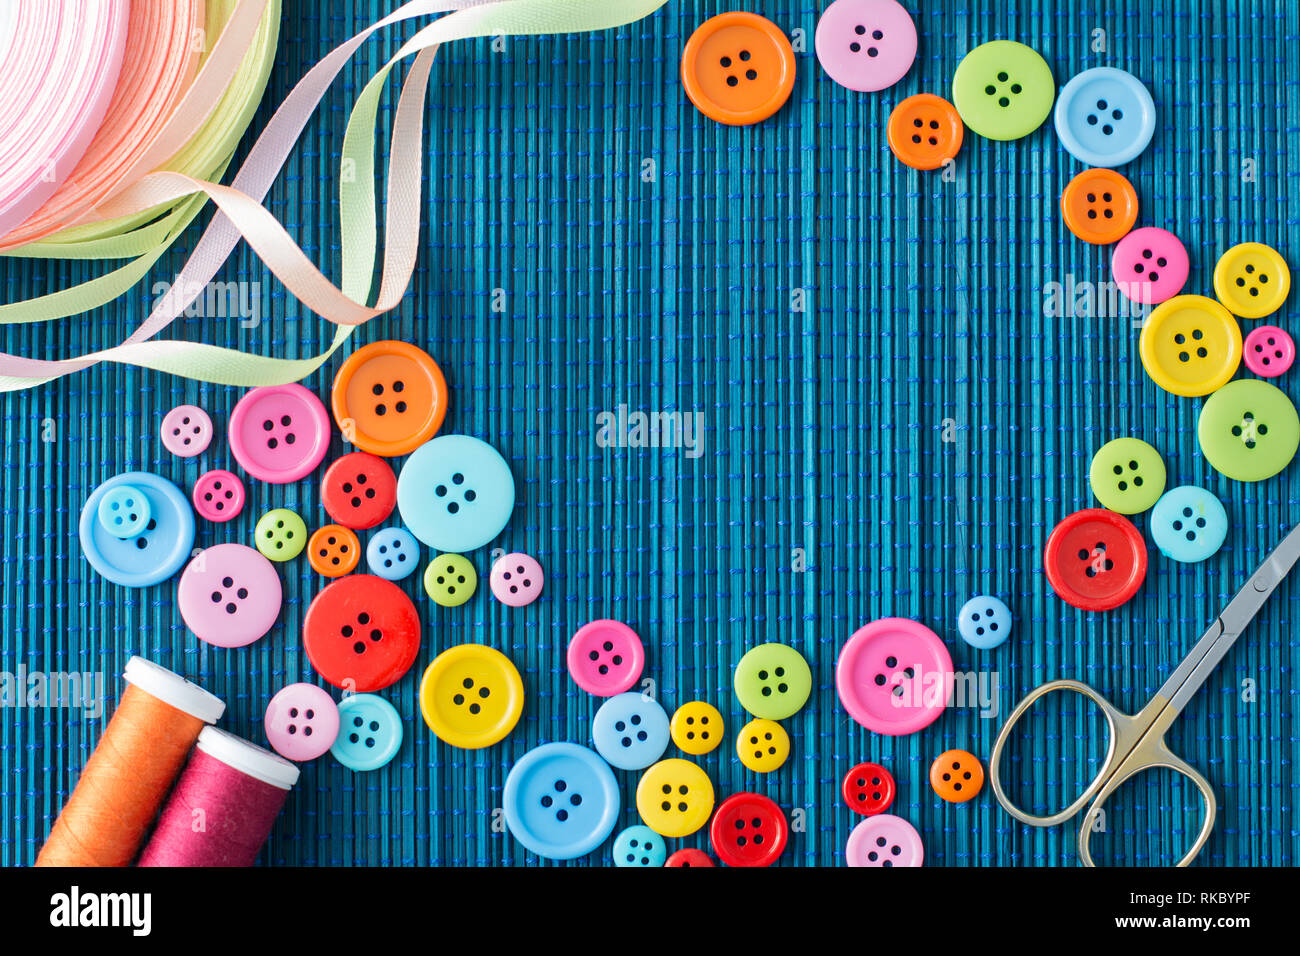 Anpassung der Ausstattung: Viele bunte Buttons, Fäden, Bänder, Scheren auf einem dunkelblauen Strohmatte-text-Raum Stockfoto